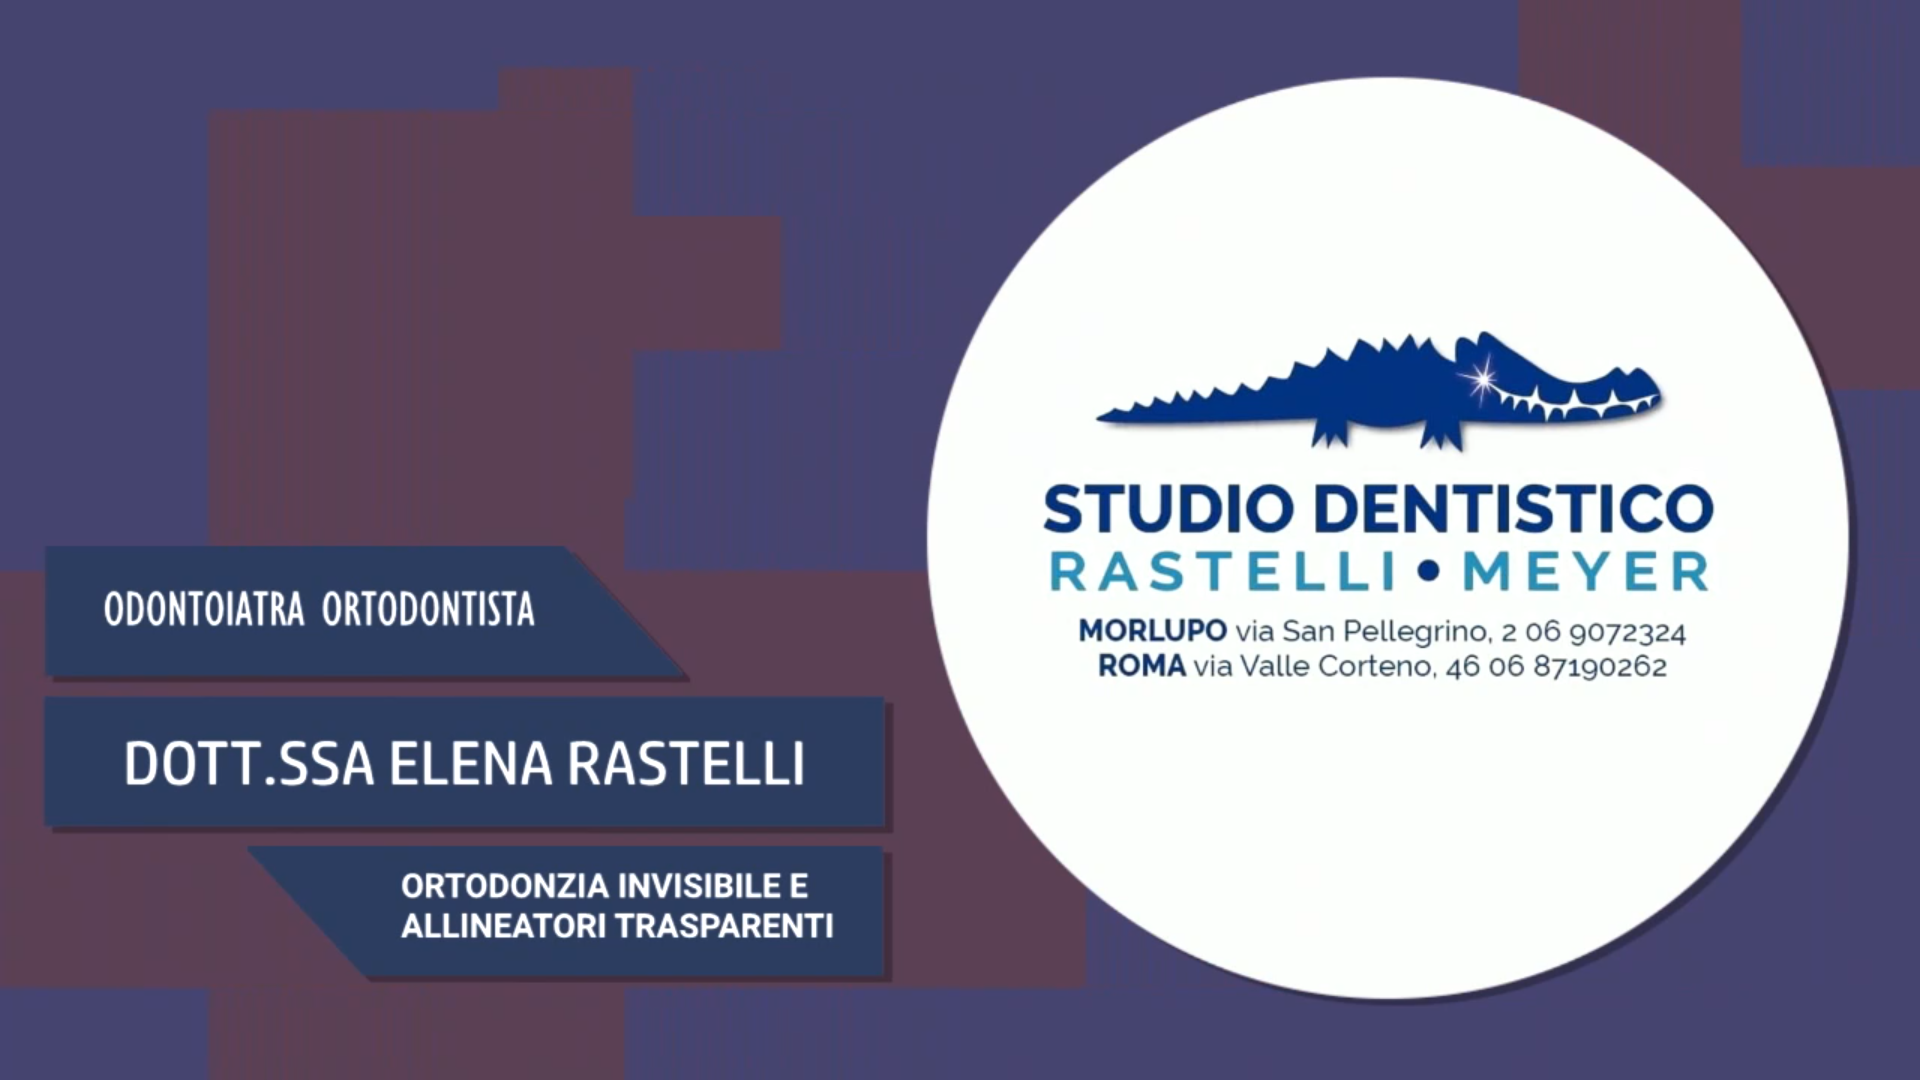 Intervista alla Dott.ssa Elena Rastelli – Ortodonzia invisibile e allineatori trasparenti